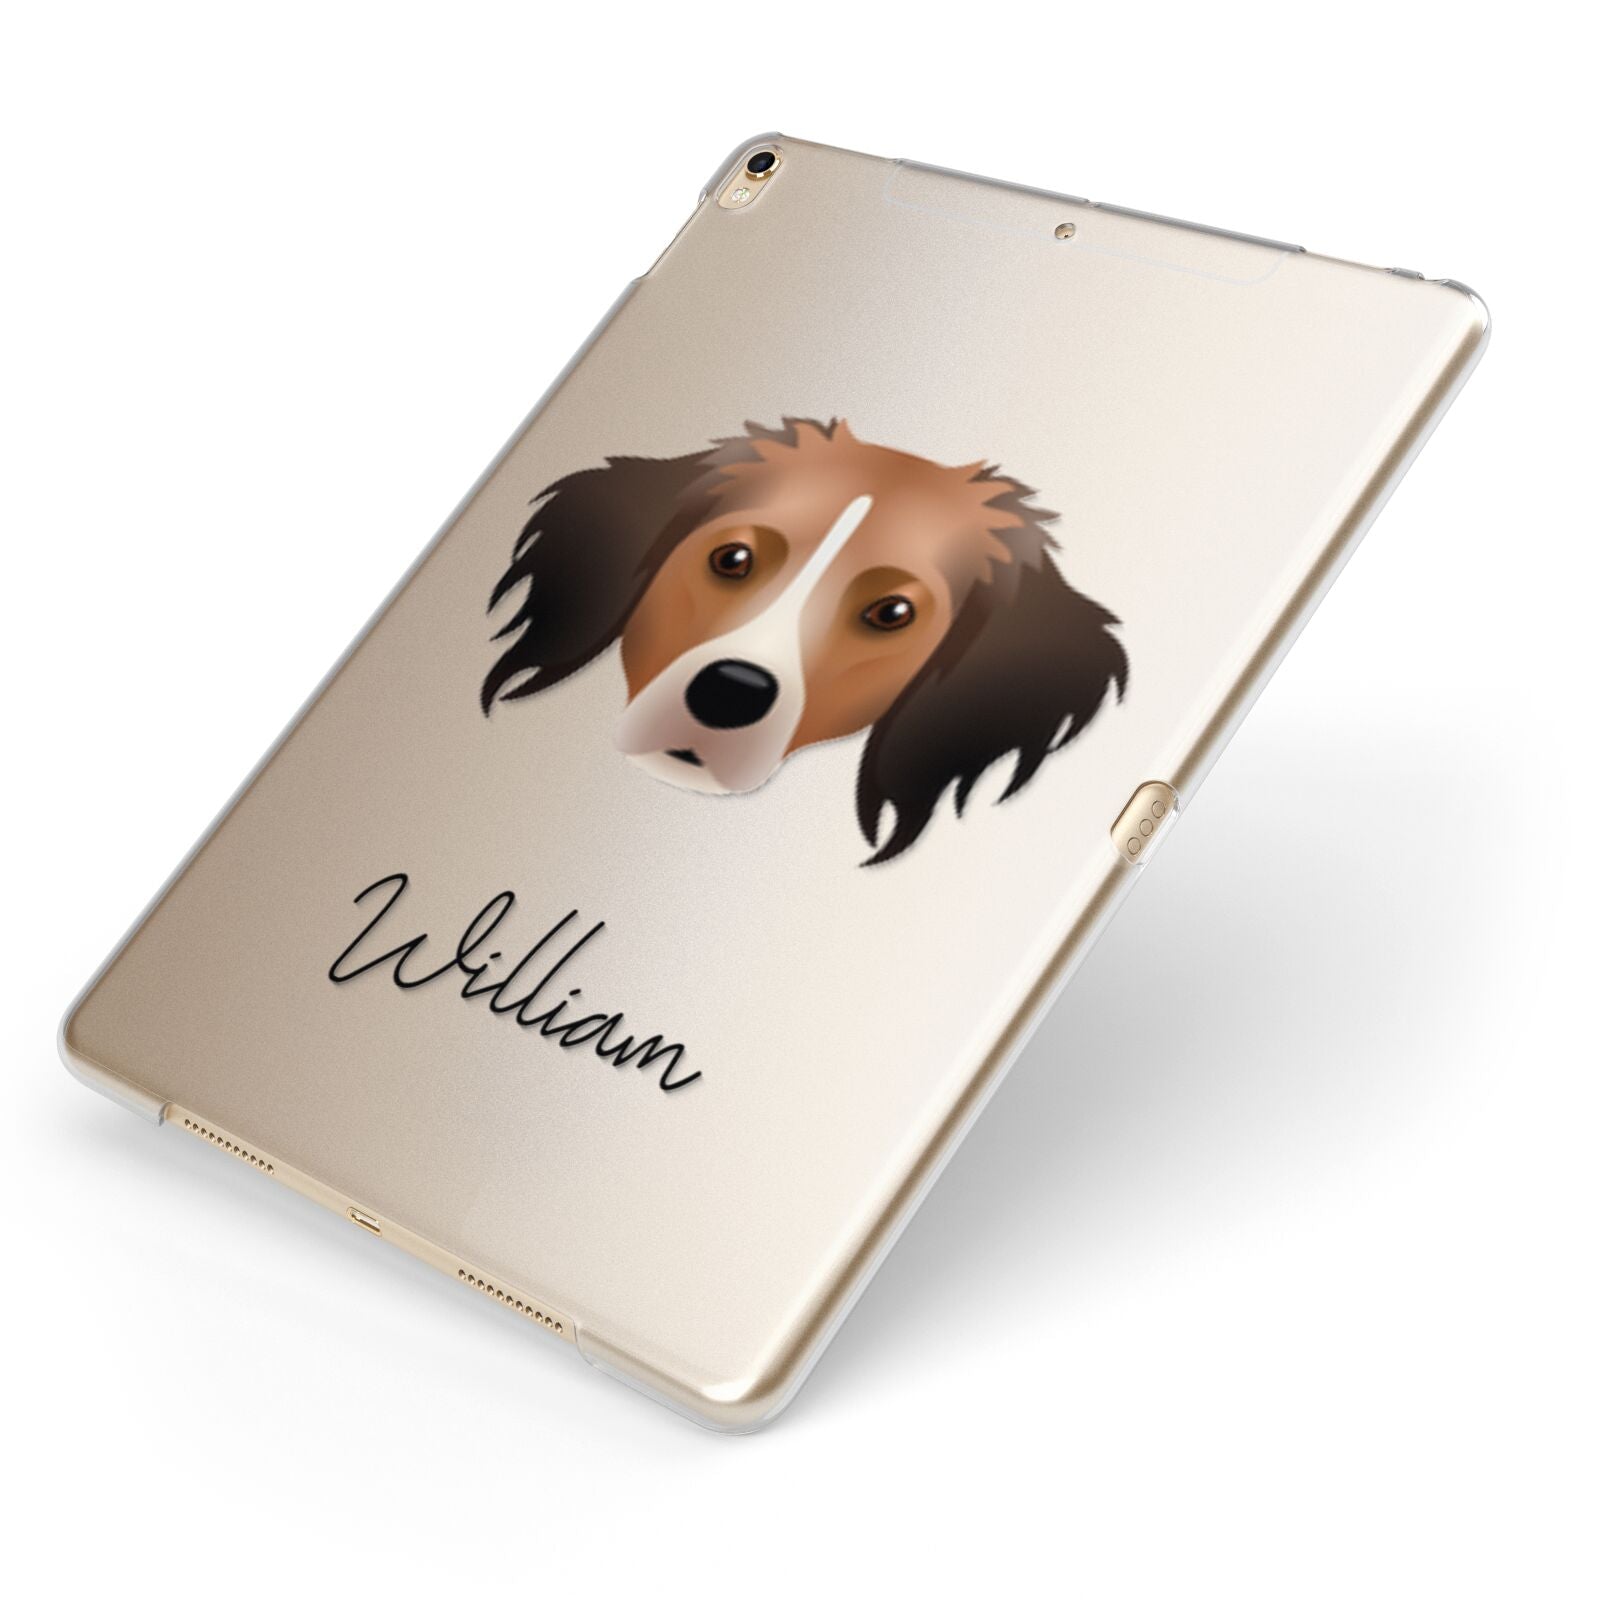 Kooikerhondje Personalised Apple iPad Case on Gold iPad Side View